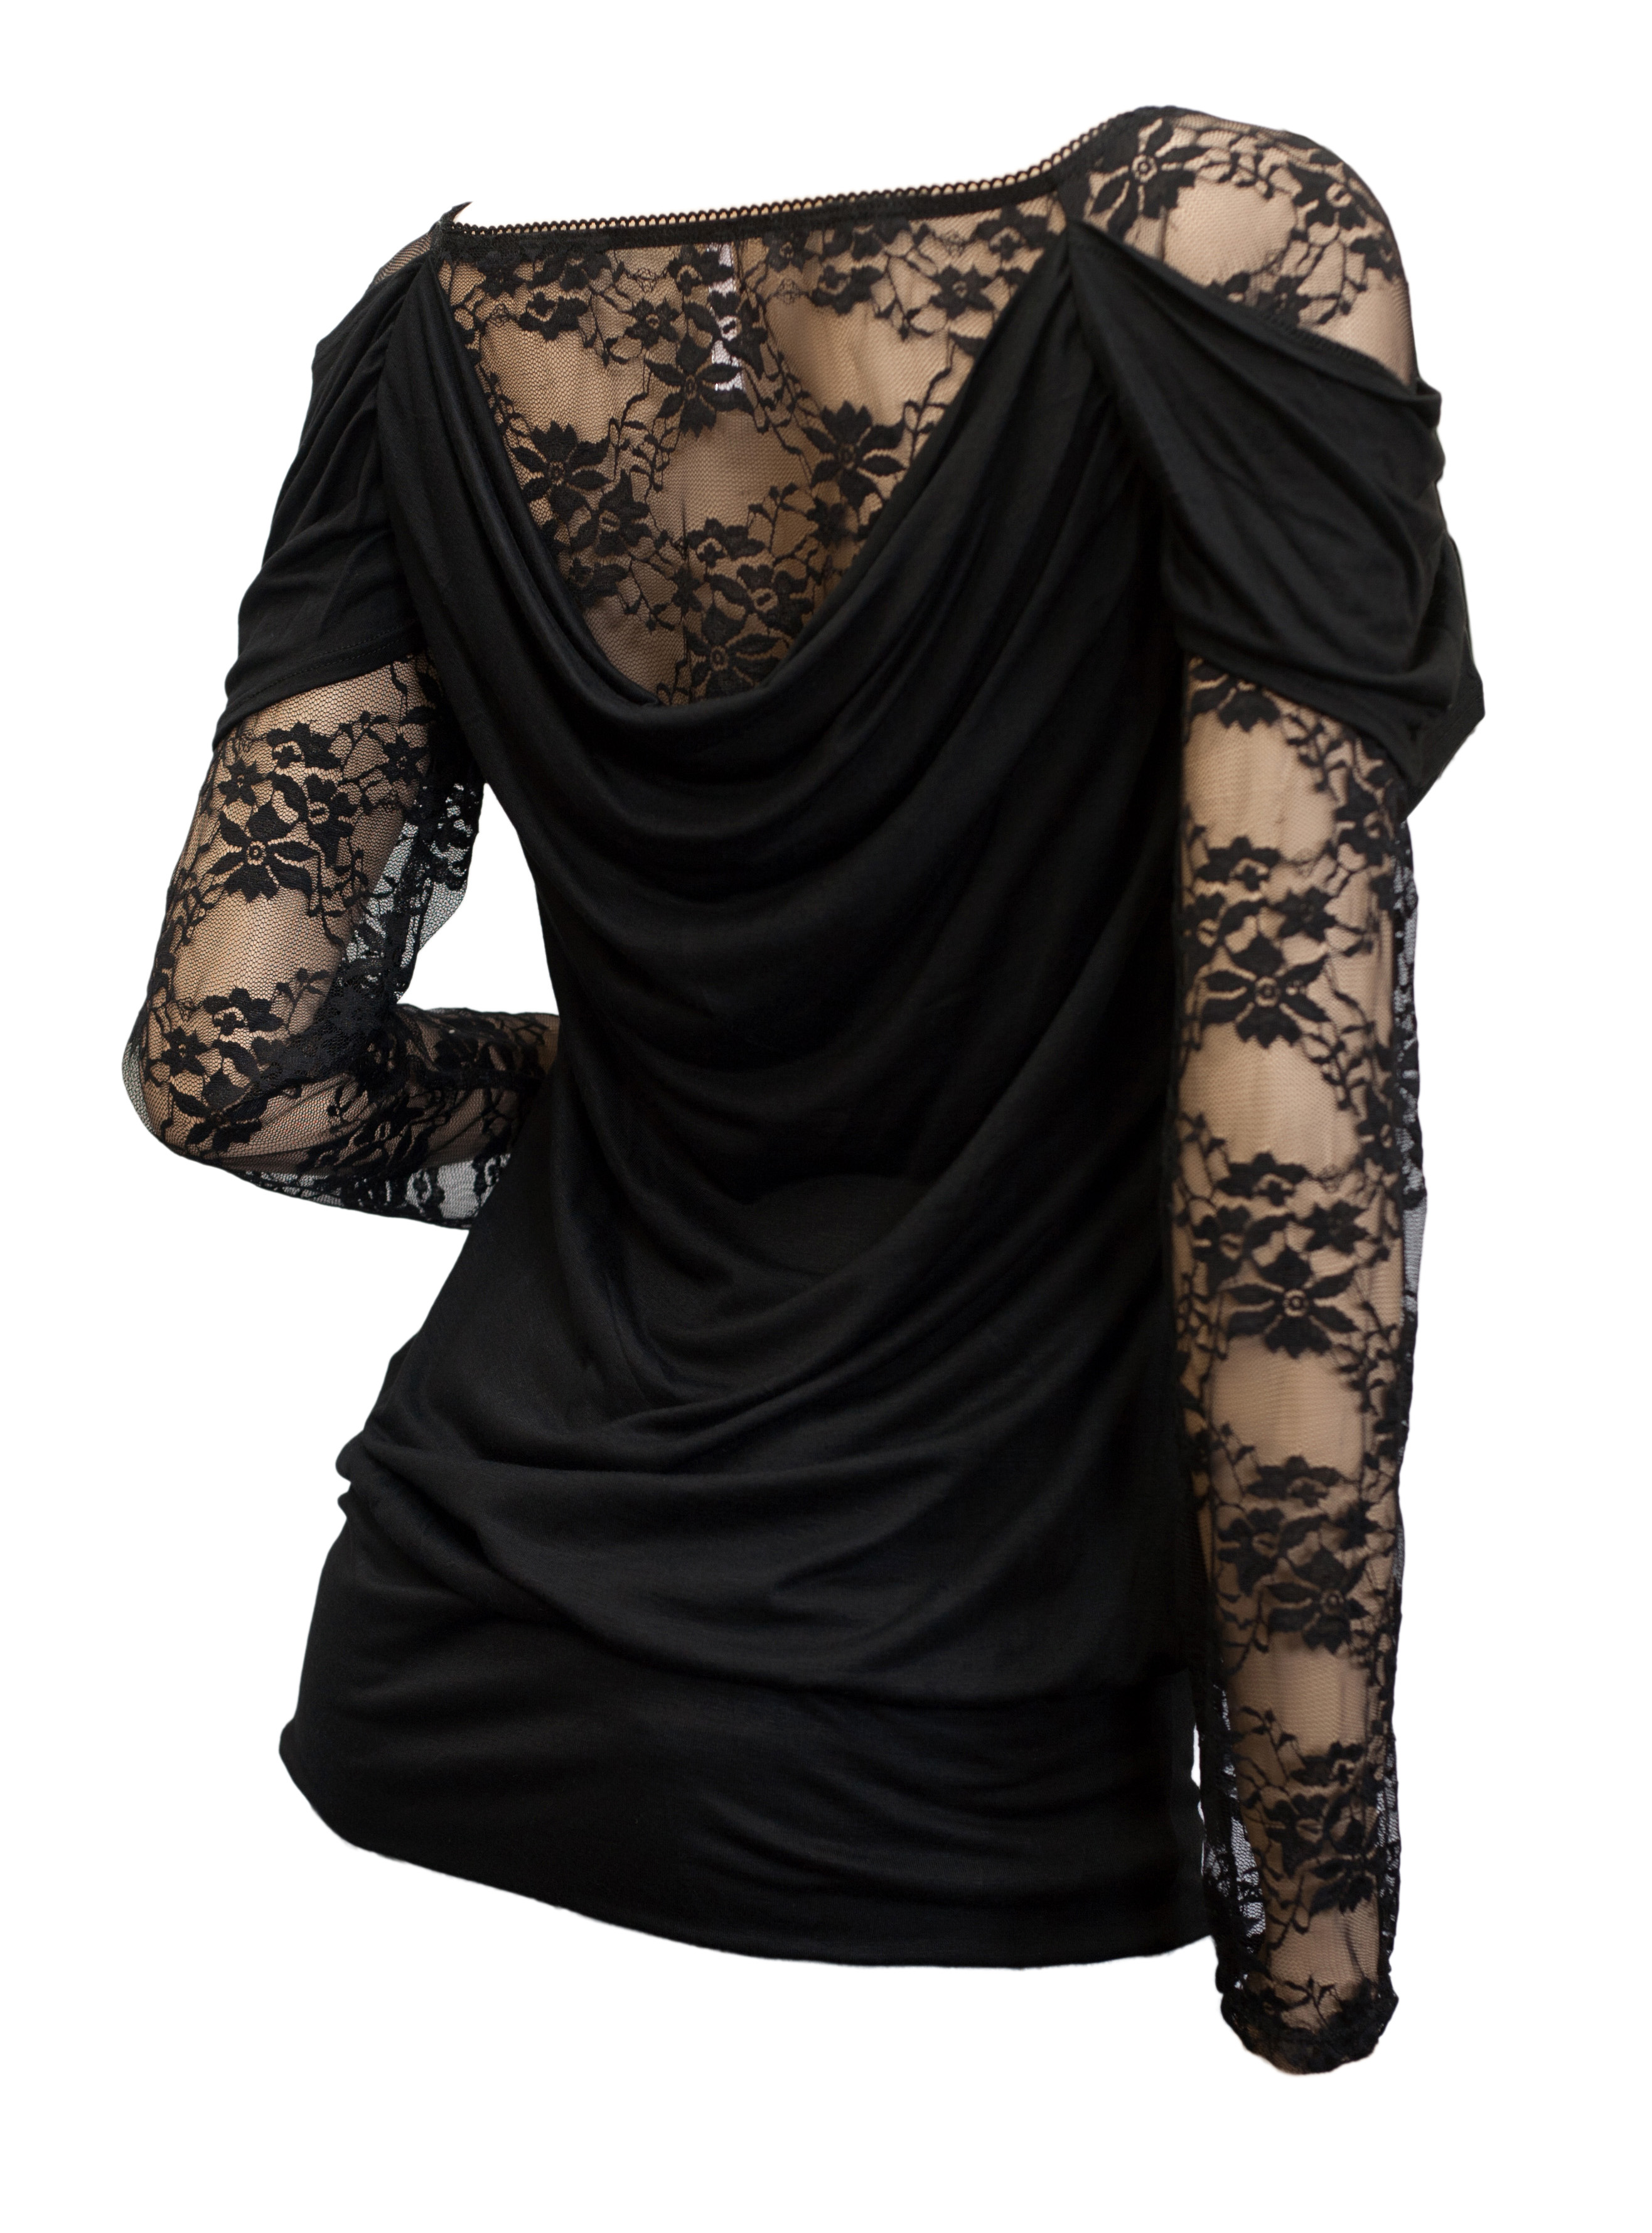 Plus size Floral Lace Sleeve Top Black Photo 3